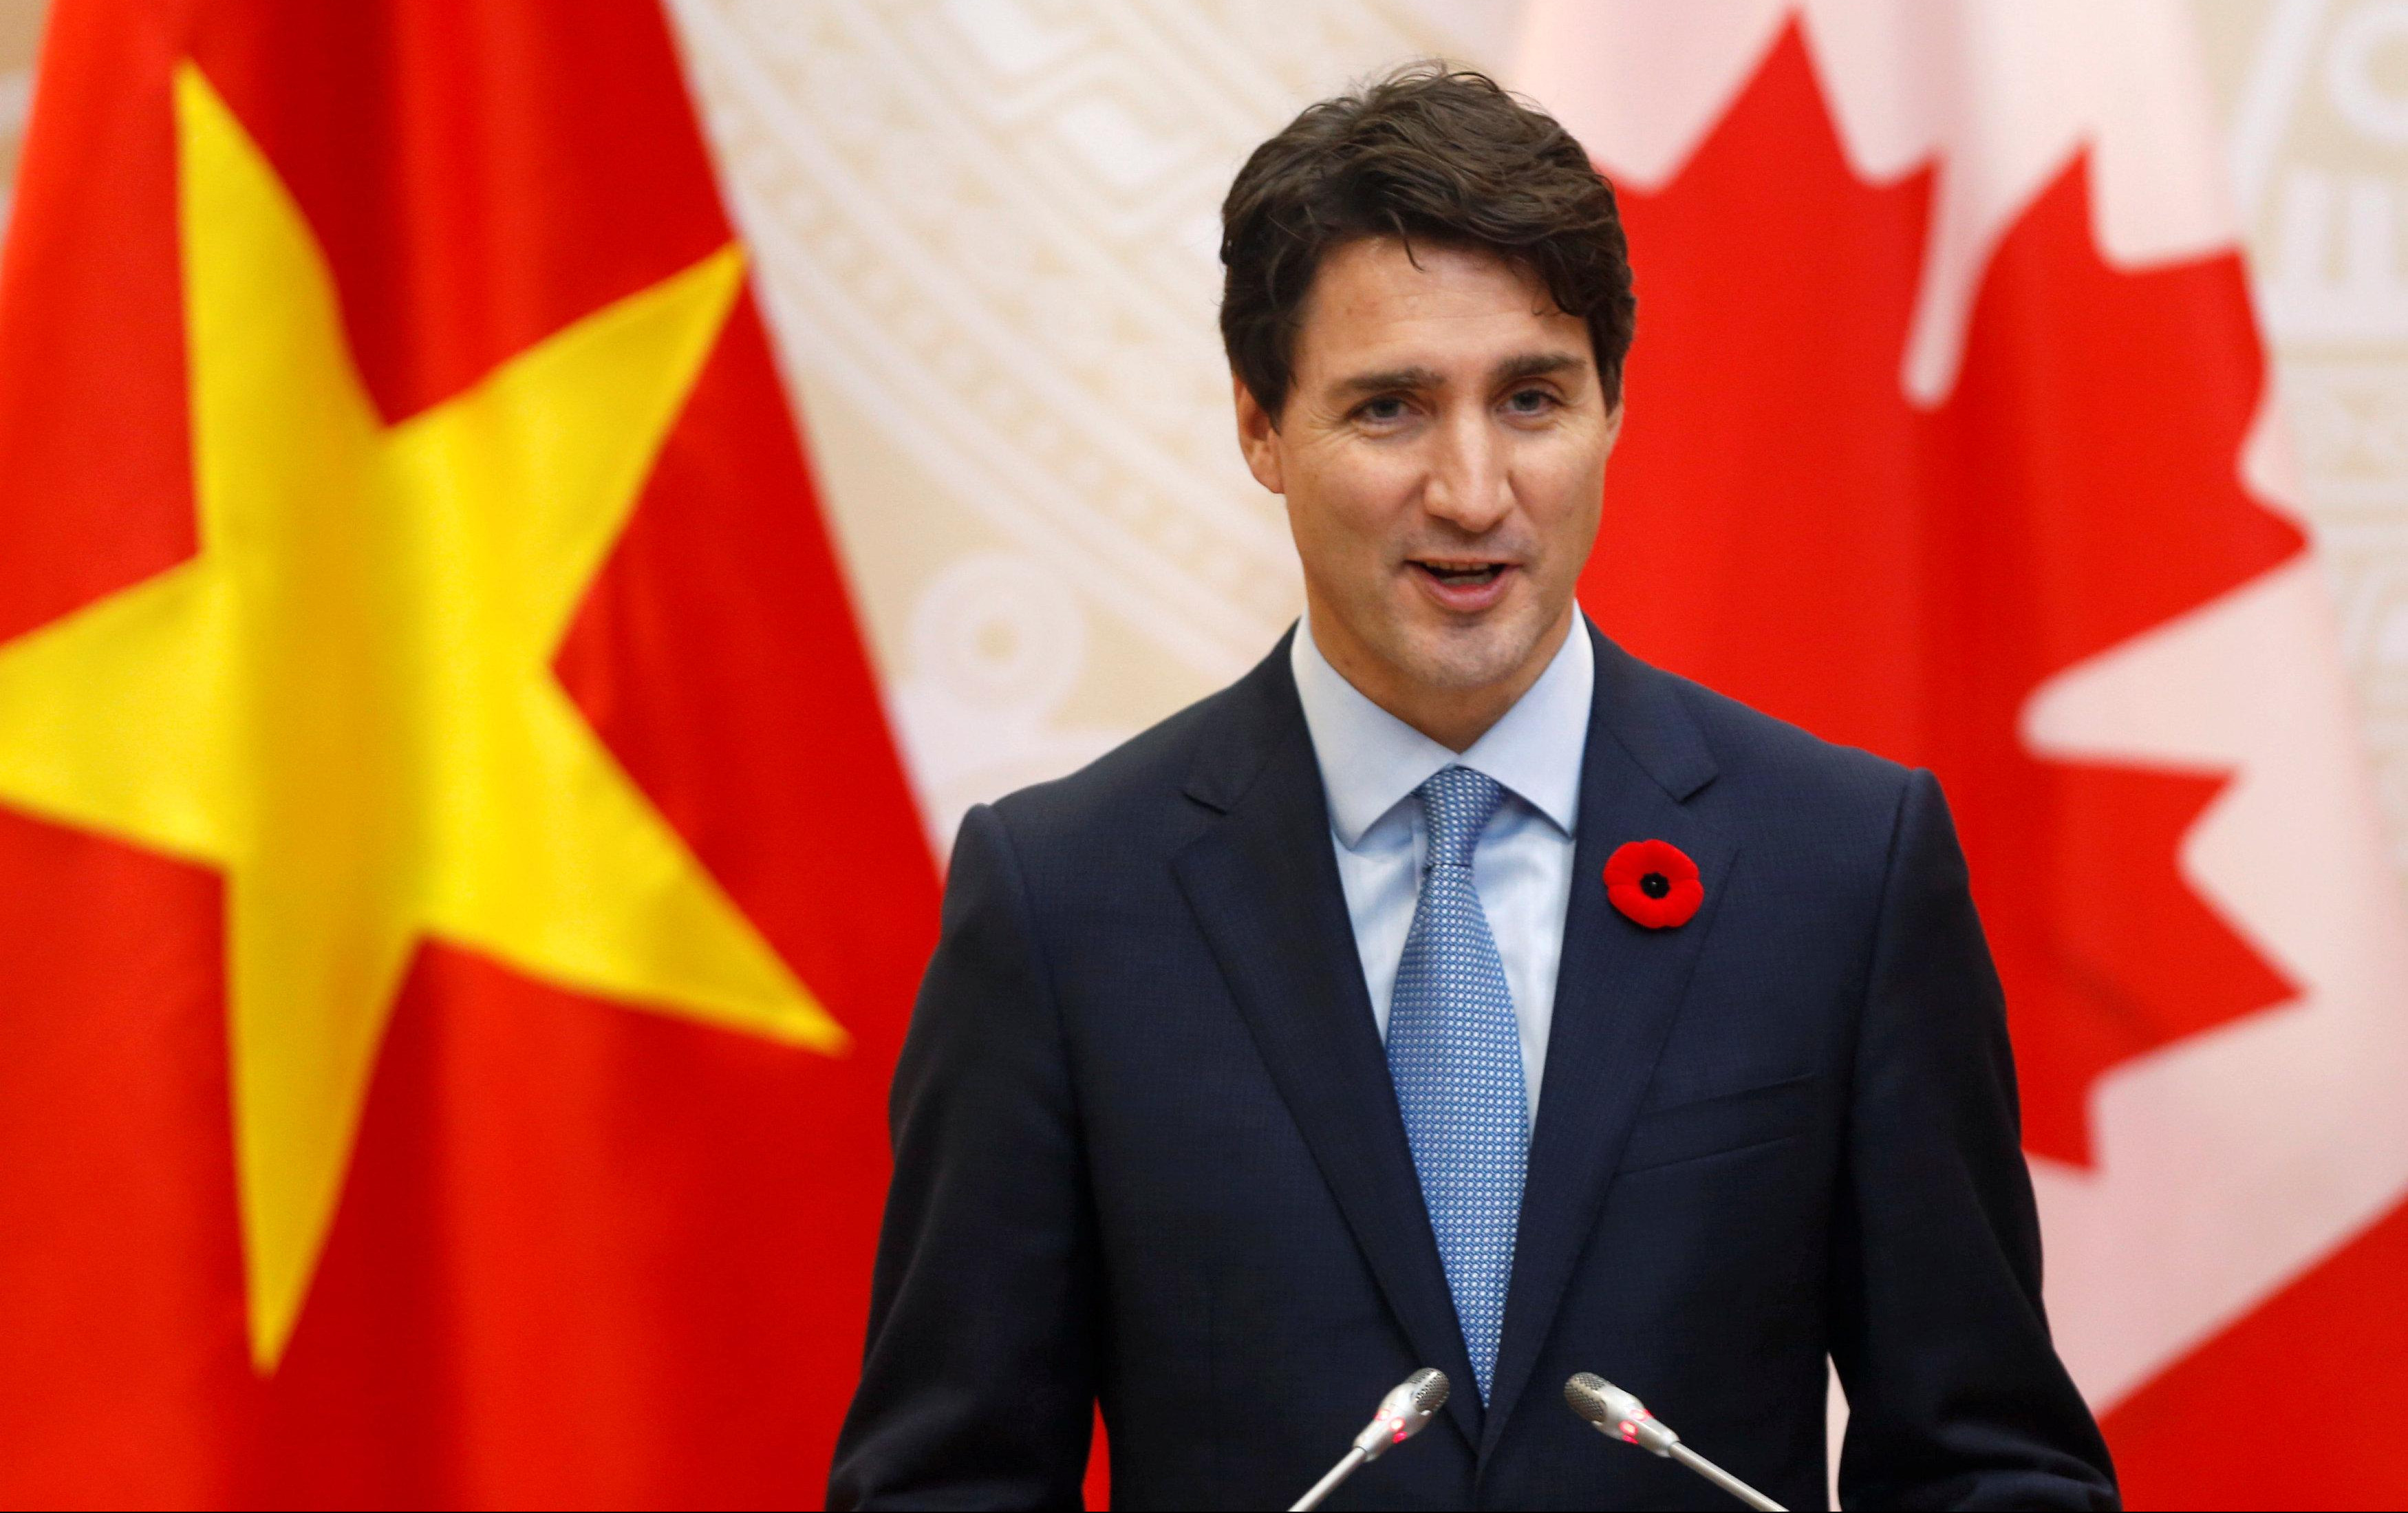 (VIDEO/FOTO) ZAR RASISTA DA UPRAVLJA ZEMLJOM?! Fotografija kanadskog premijera na kojoj mu je lice zatamnjeno šminkom izazvala ŠOK uoči izbora! Trudo: Duboko žalim!